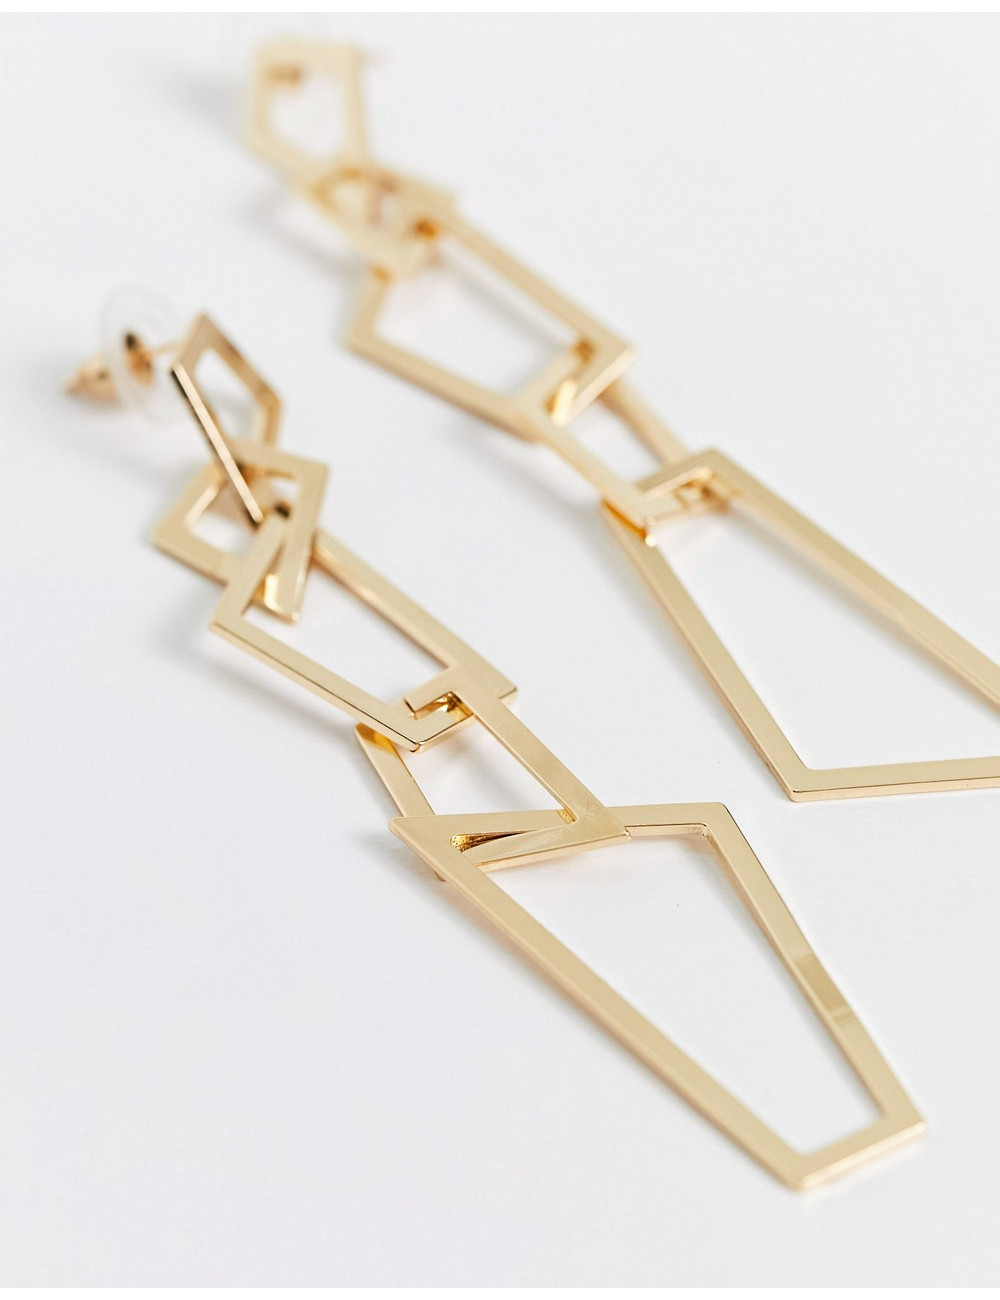 SVNX dangly earrings in gold